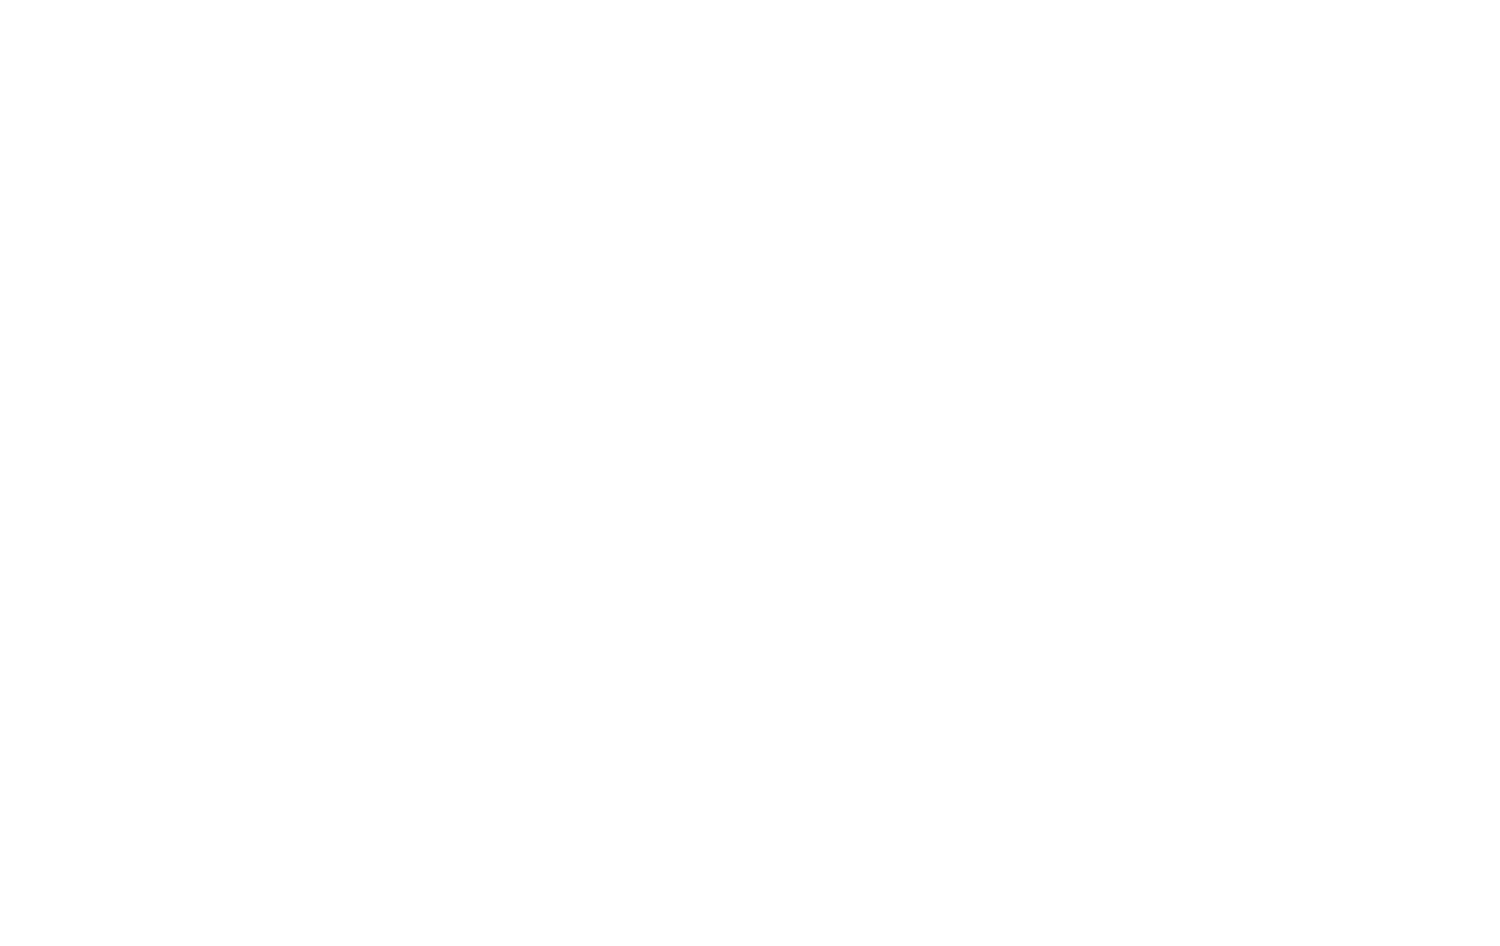 Reparative Media